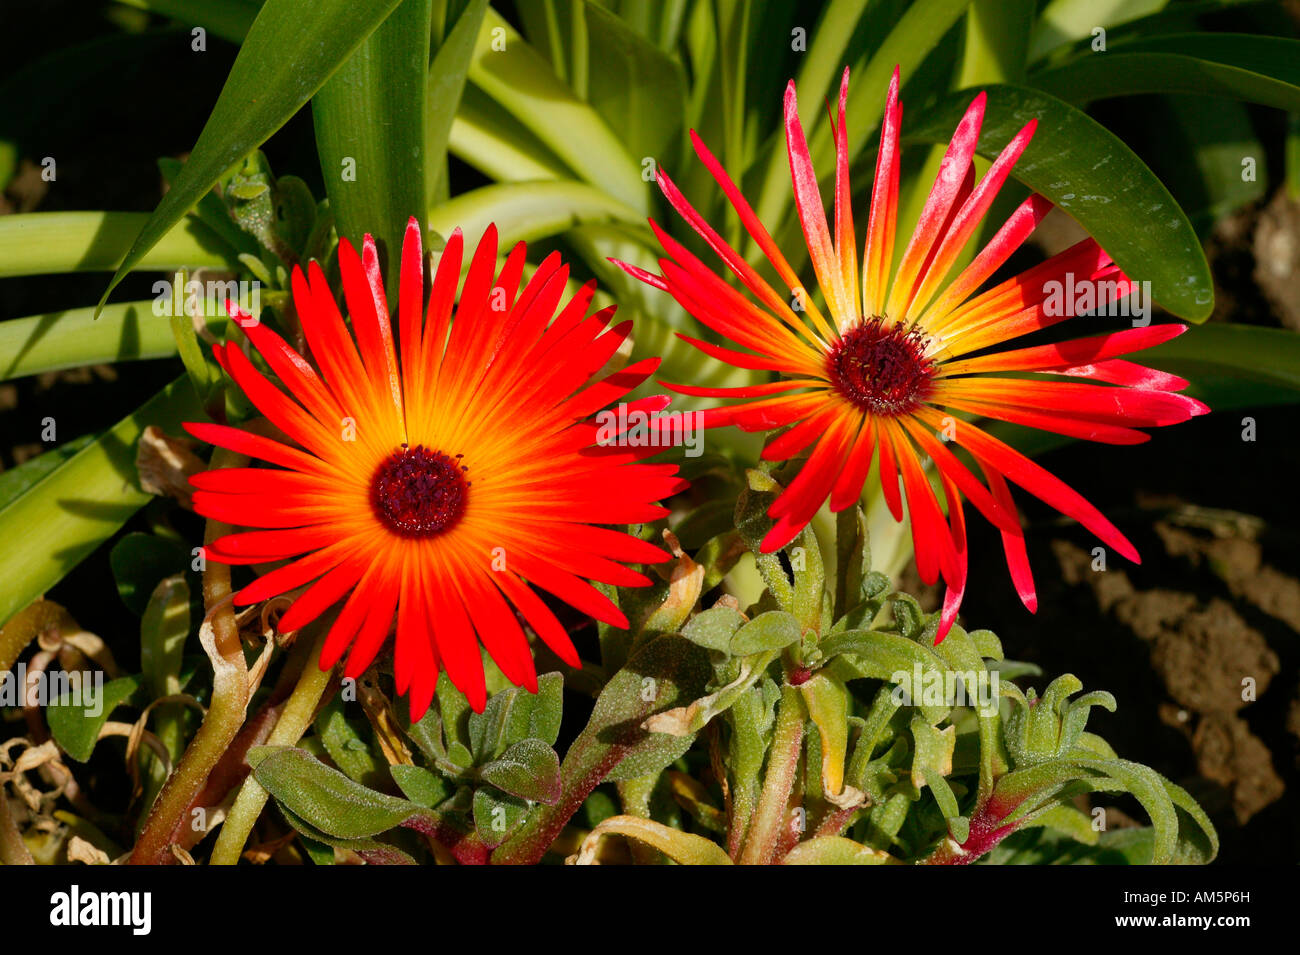 Red garden midday flower Mesembryanthenum criniflorum, South Africa Stock Photo